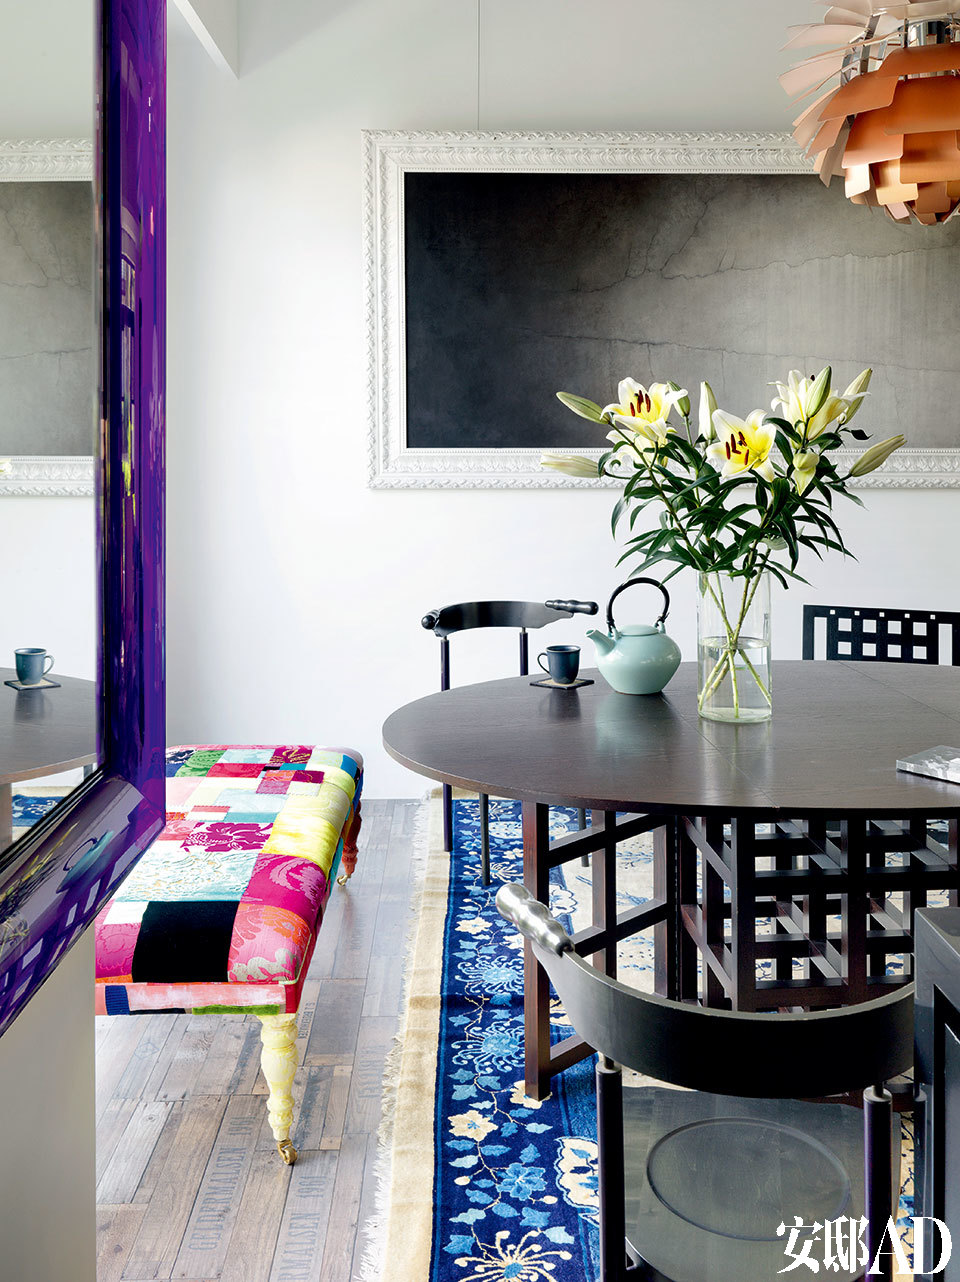 墻上掛著陳文驥的極簡風格畫作，正契合姚謙現在追求的的氛圍。用餐空間，黑色餐桌餐椅為查爾斯·馬金托什(Charles Rennie Mackintosh)的作品，一旁彩色拼布榻為設計師Lisa Whatmough為倫敦品牌Squint所設計。墻上是藝術家陳文驥的作品《漸離》。